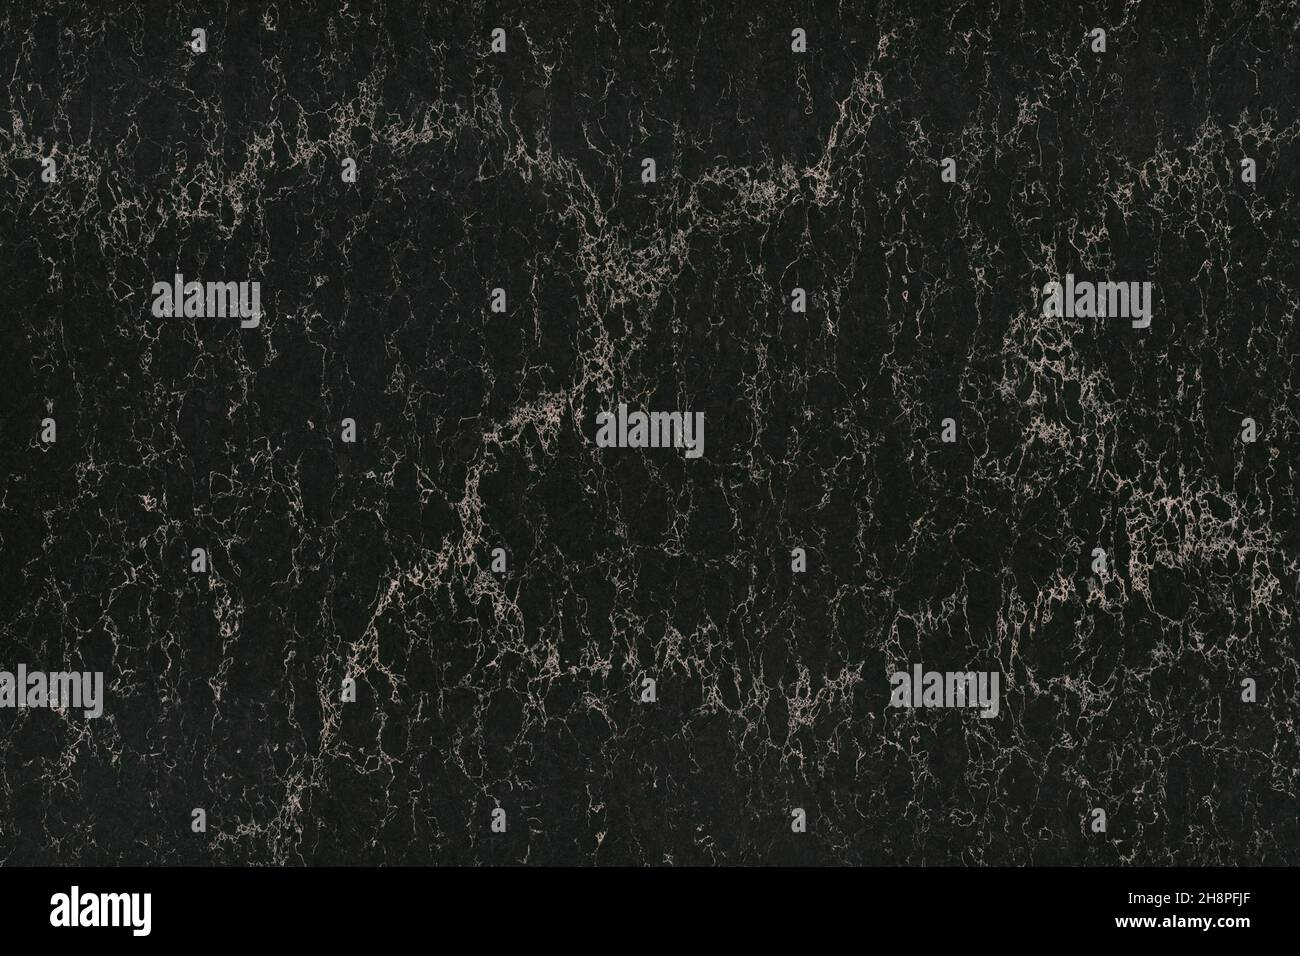 Vue de dessus du motif d'arrière-plan texture marbre noir.Mur en pierre de granit avec des bandes lumineuses.Motifs abstraits de luxe.Motif marbrure pour bannière Banque D'Images